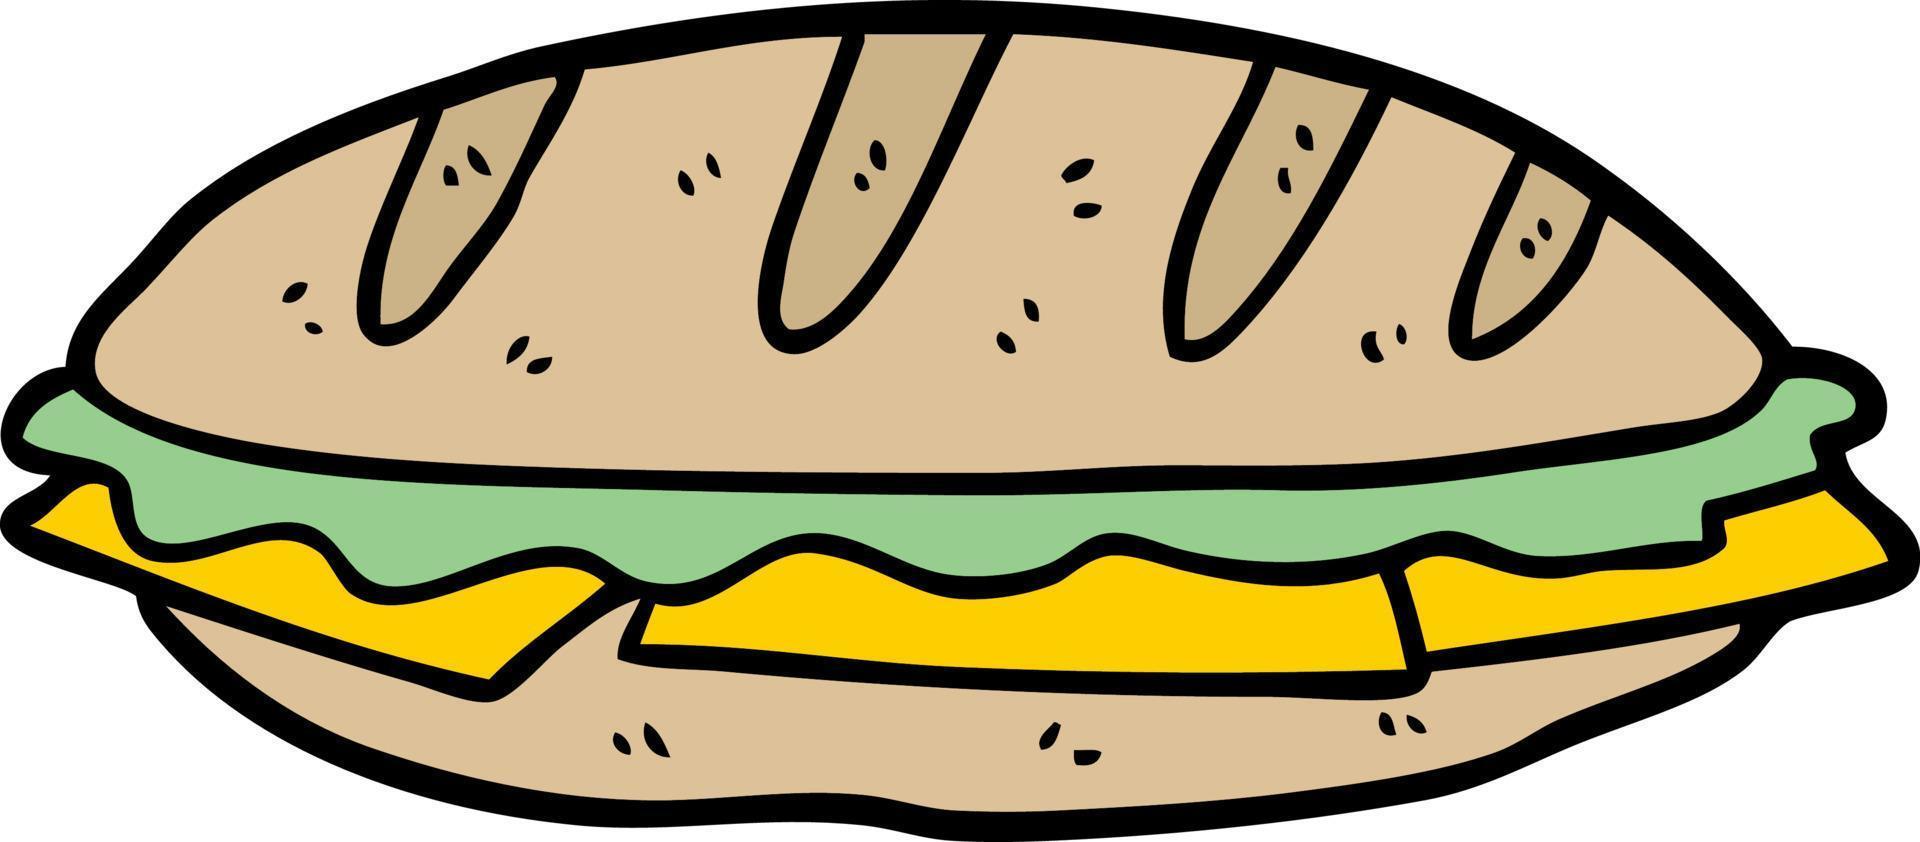 Cartoon isoliertes Sandwich vektor